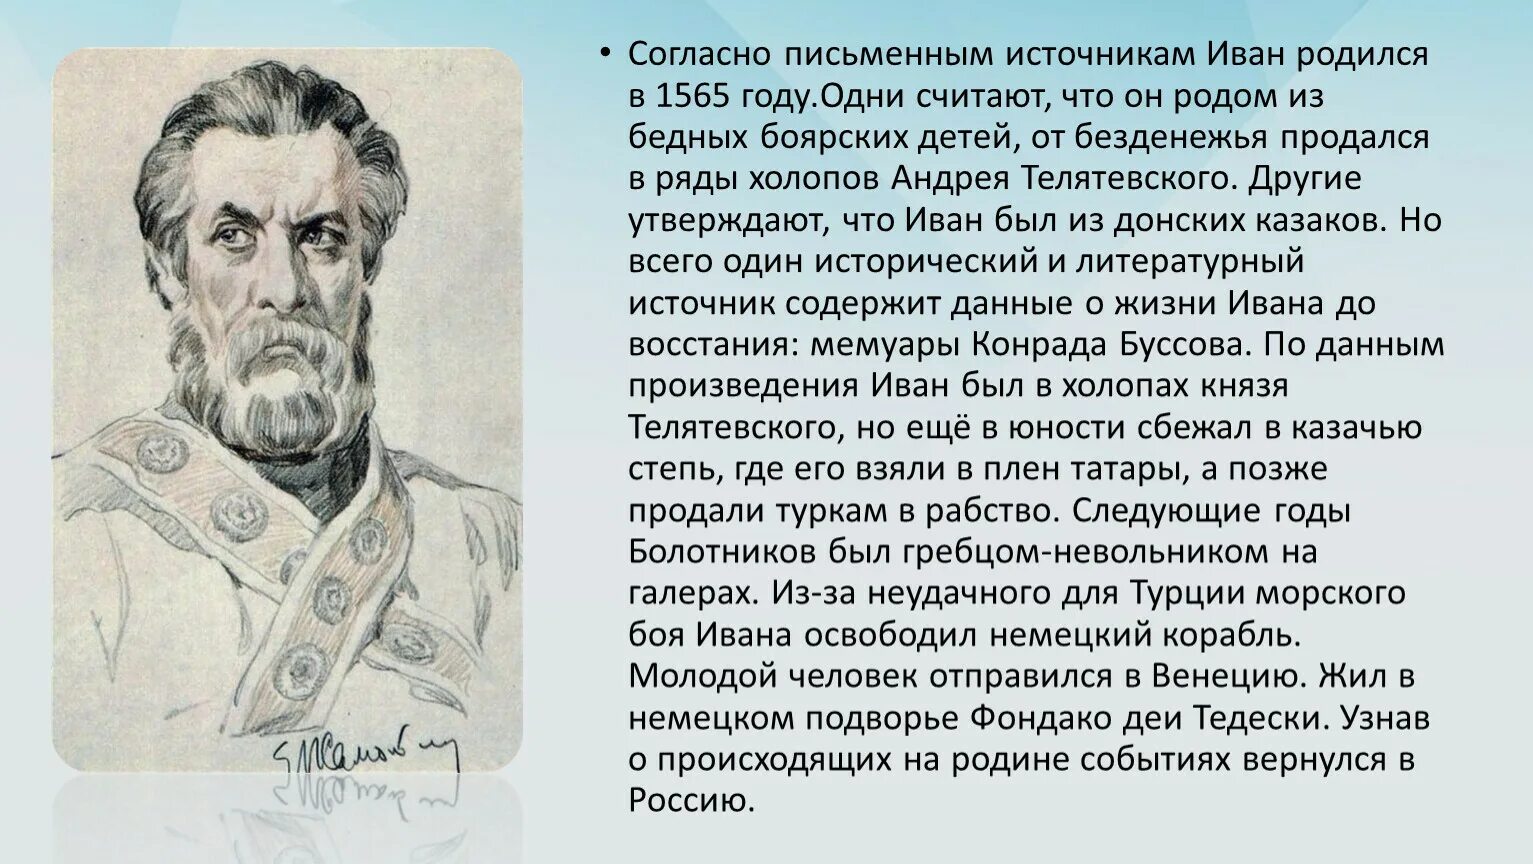 Исторический портрет Болотникова.